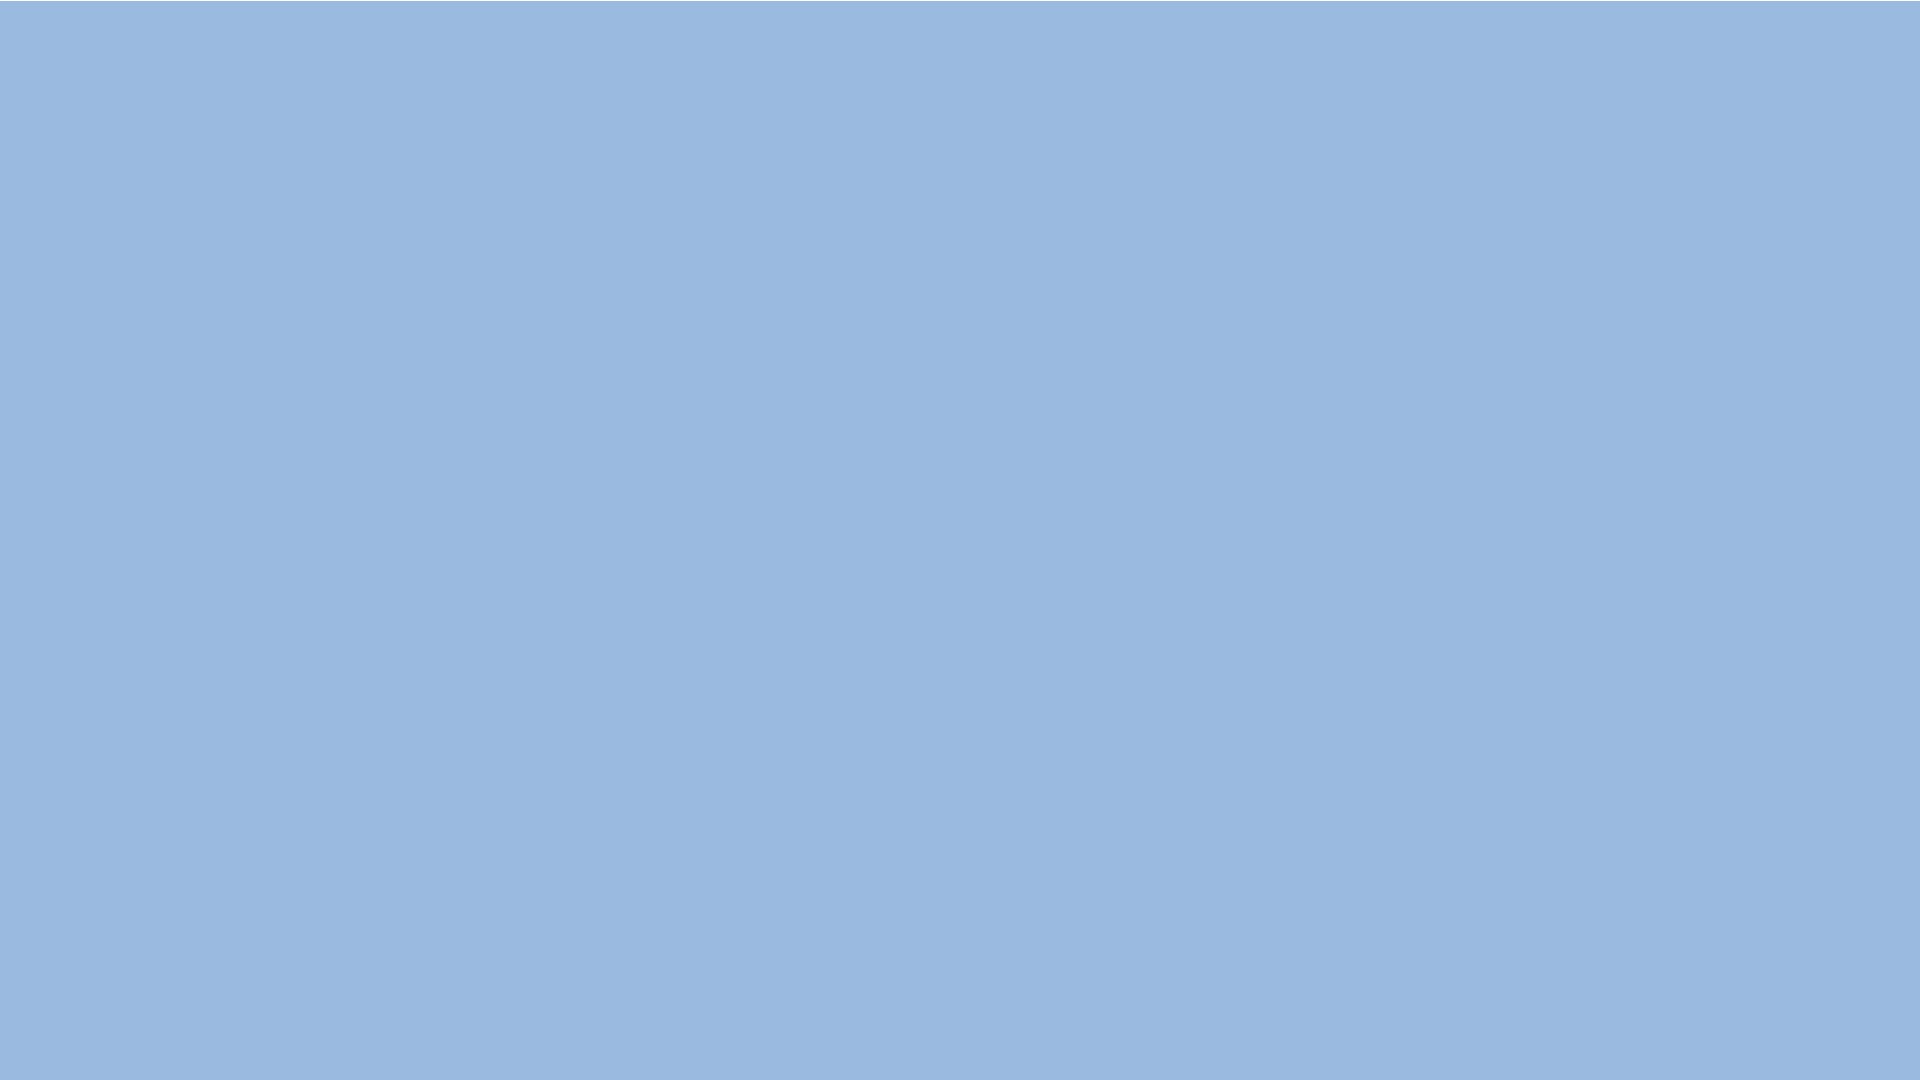 Carolina Blue Solid Color Background